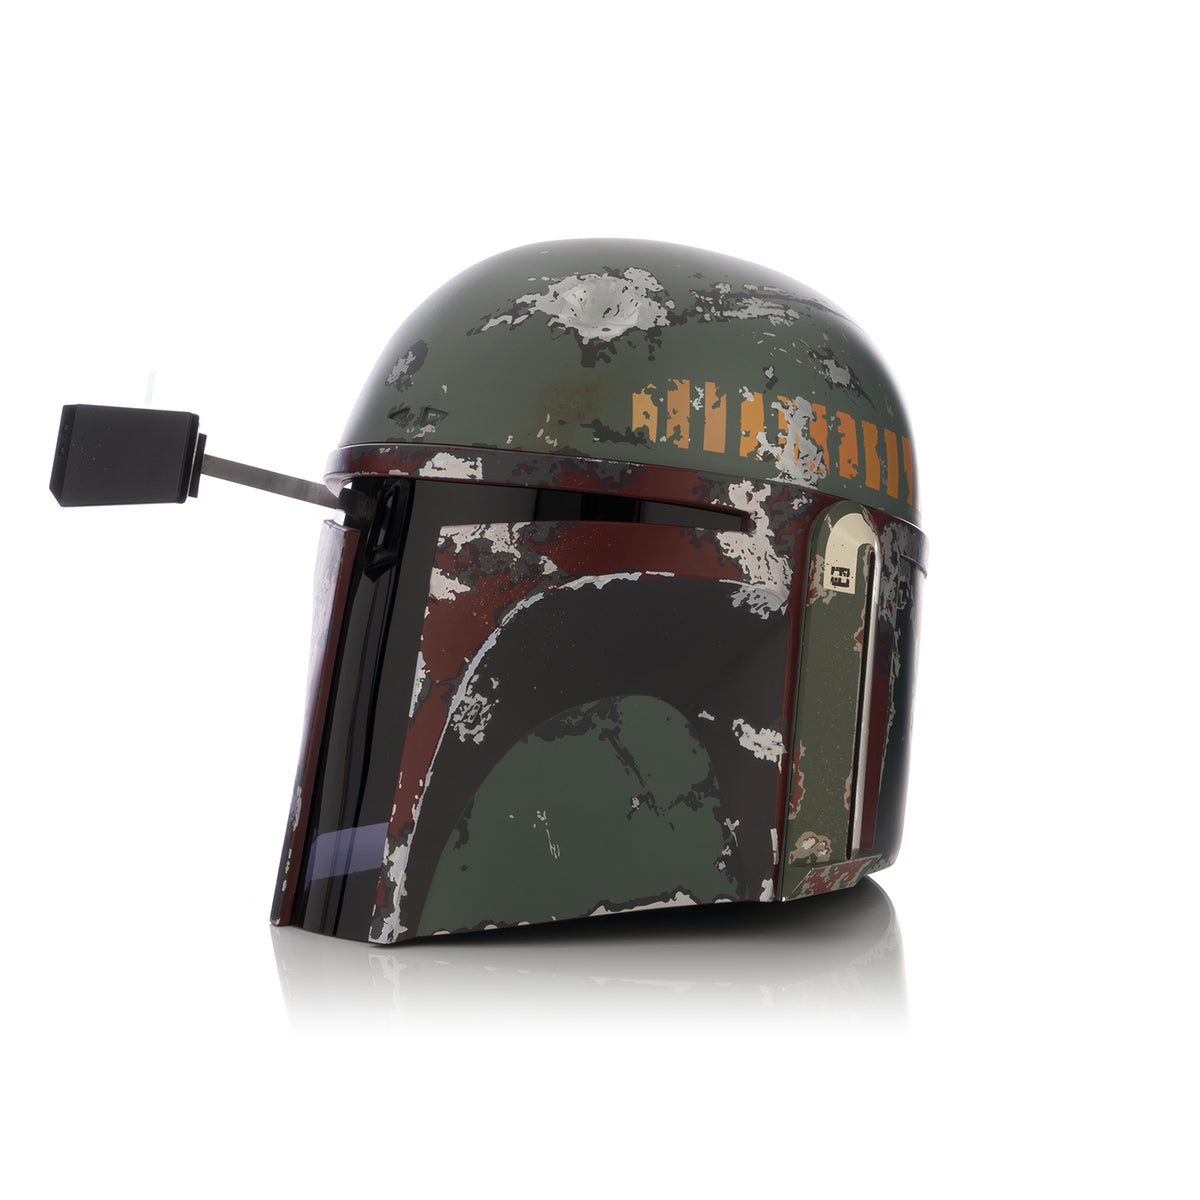 Star Wars | EFX Boba Fett Helmet 1:1 Precision Crafted Replica - Concrete